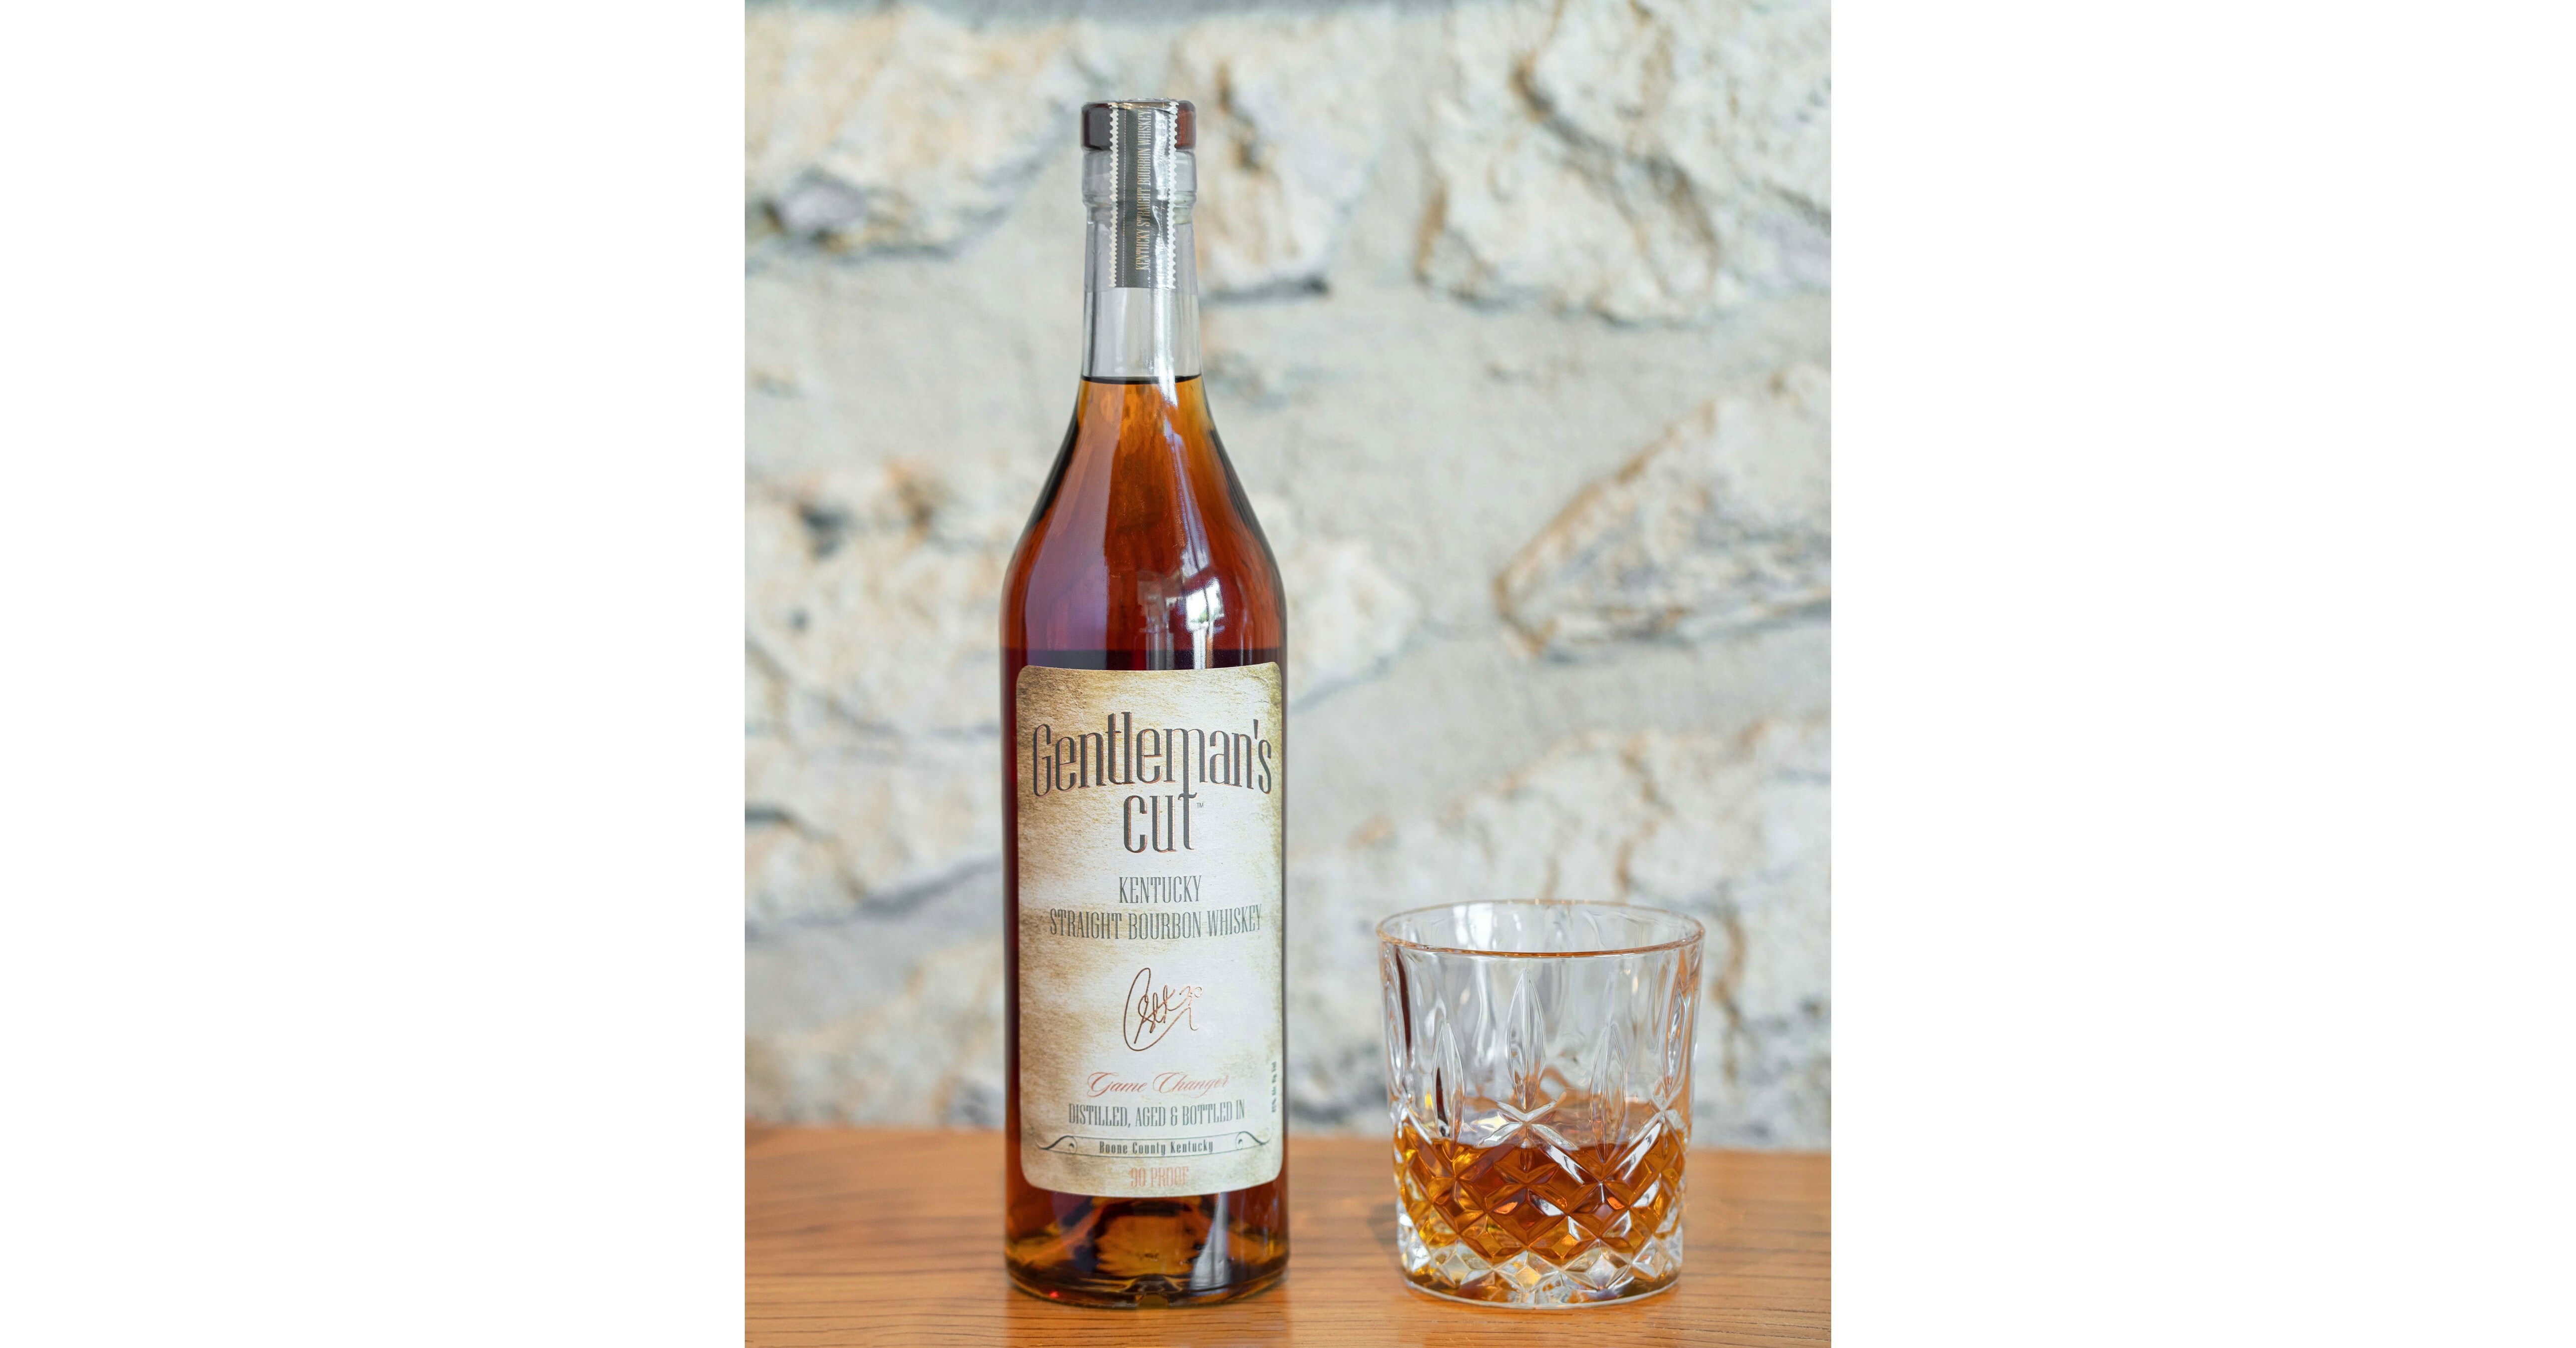 Stephen Curry Drinks Gentleman's Cut Bourbon After Golf Win